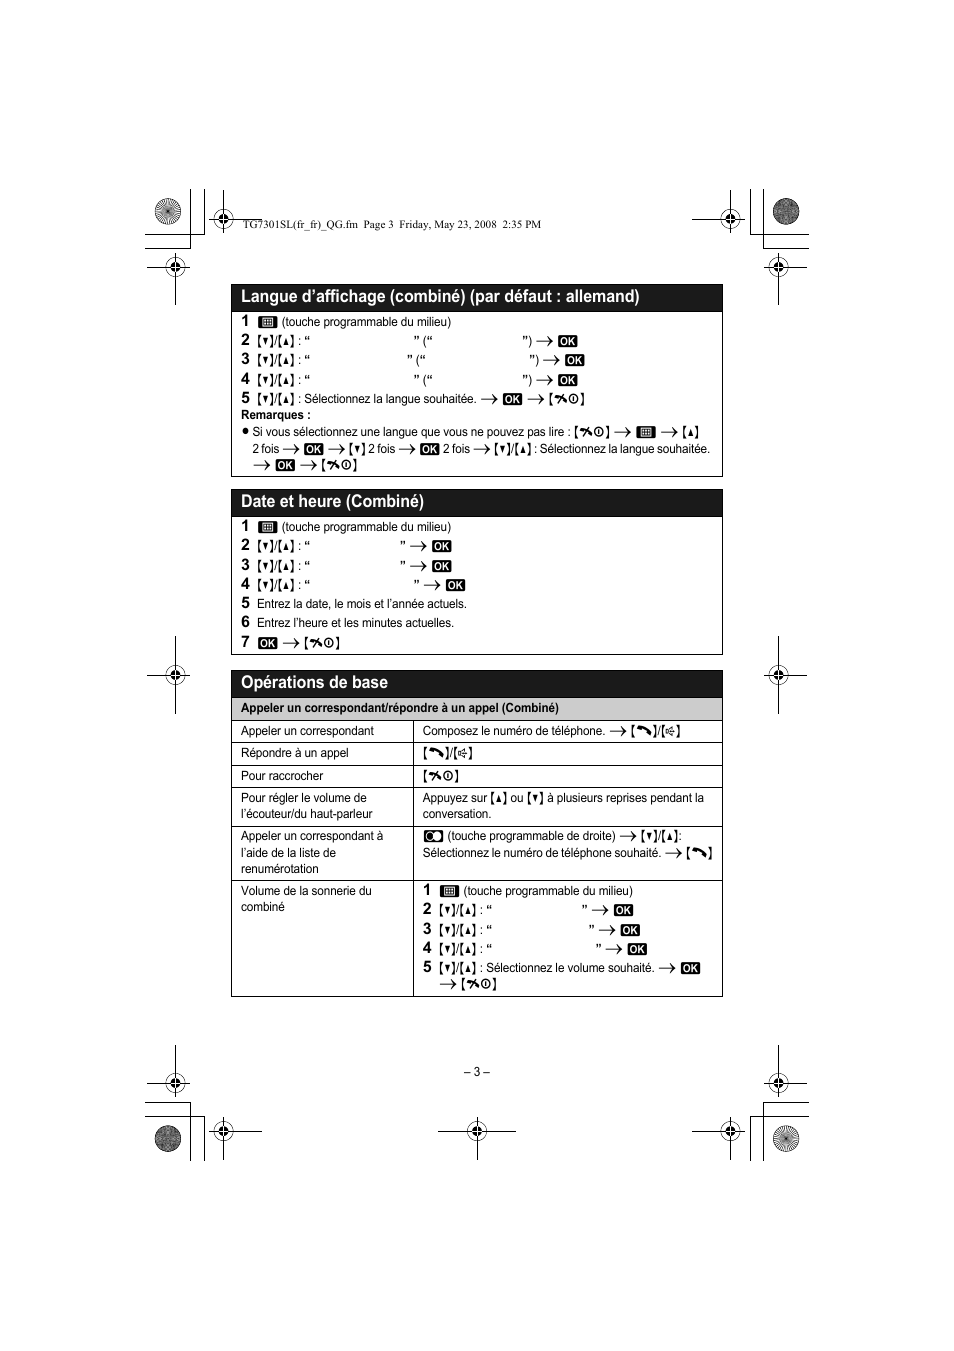 Date et heure (combiné), Opérations de base | Panasonic KXTG7301SL Manuel d'utilisation | Page 3 / 8